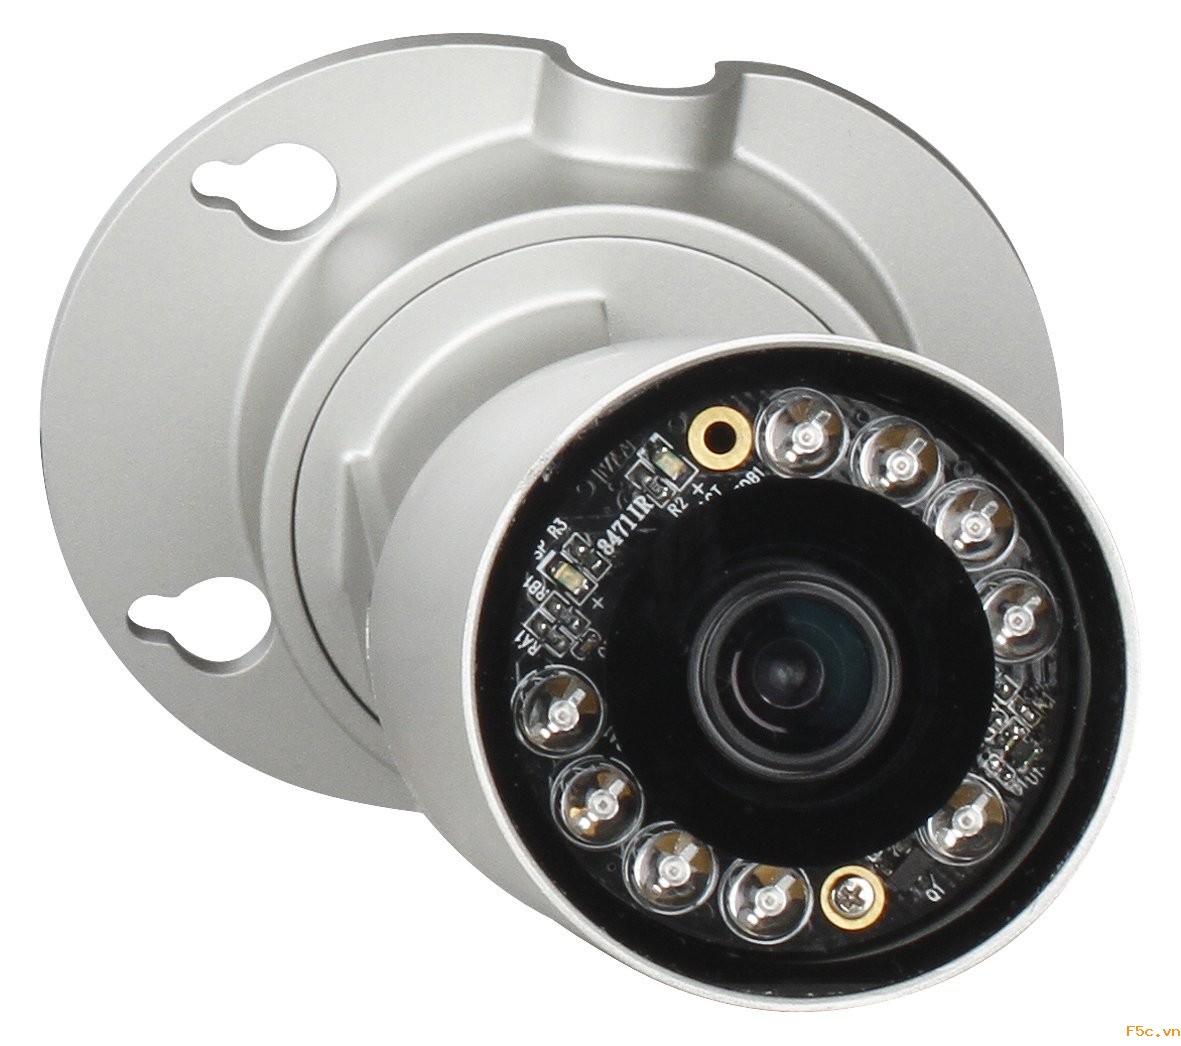 Camera D-link DCS-7010L